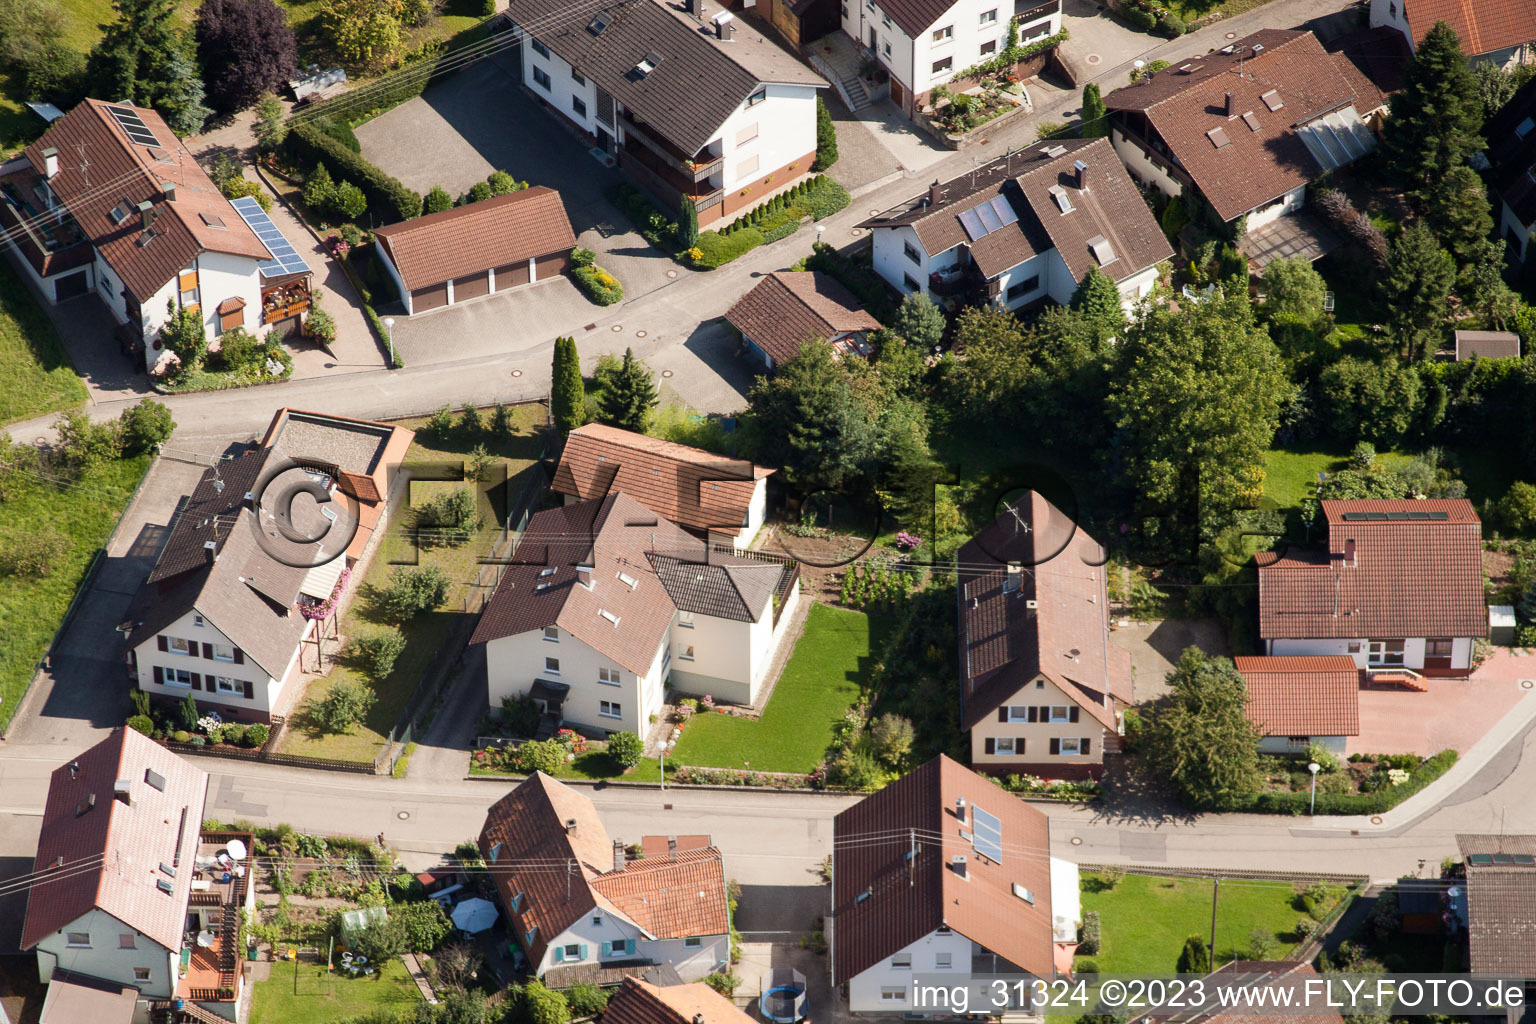 Ortsteil Gallenbach in Baden-Baden im Bundesland Baden-Württemberg, Deutschland von einer Drohne aus